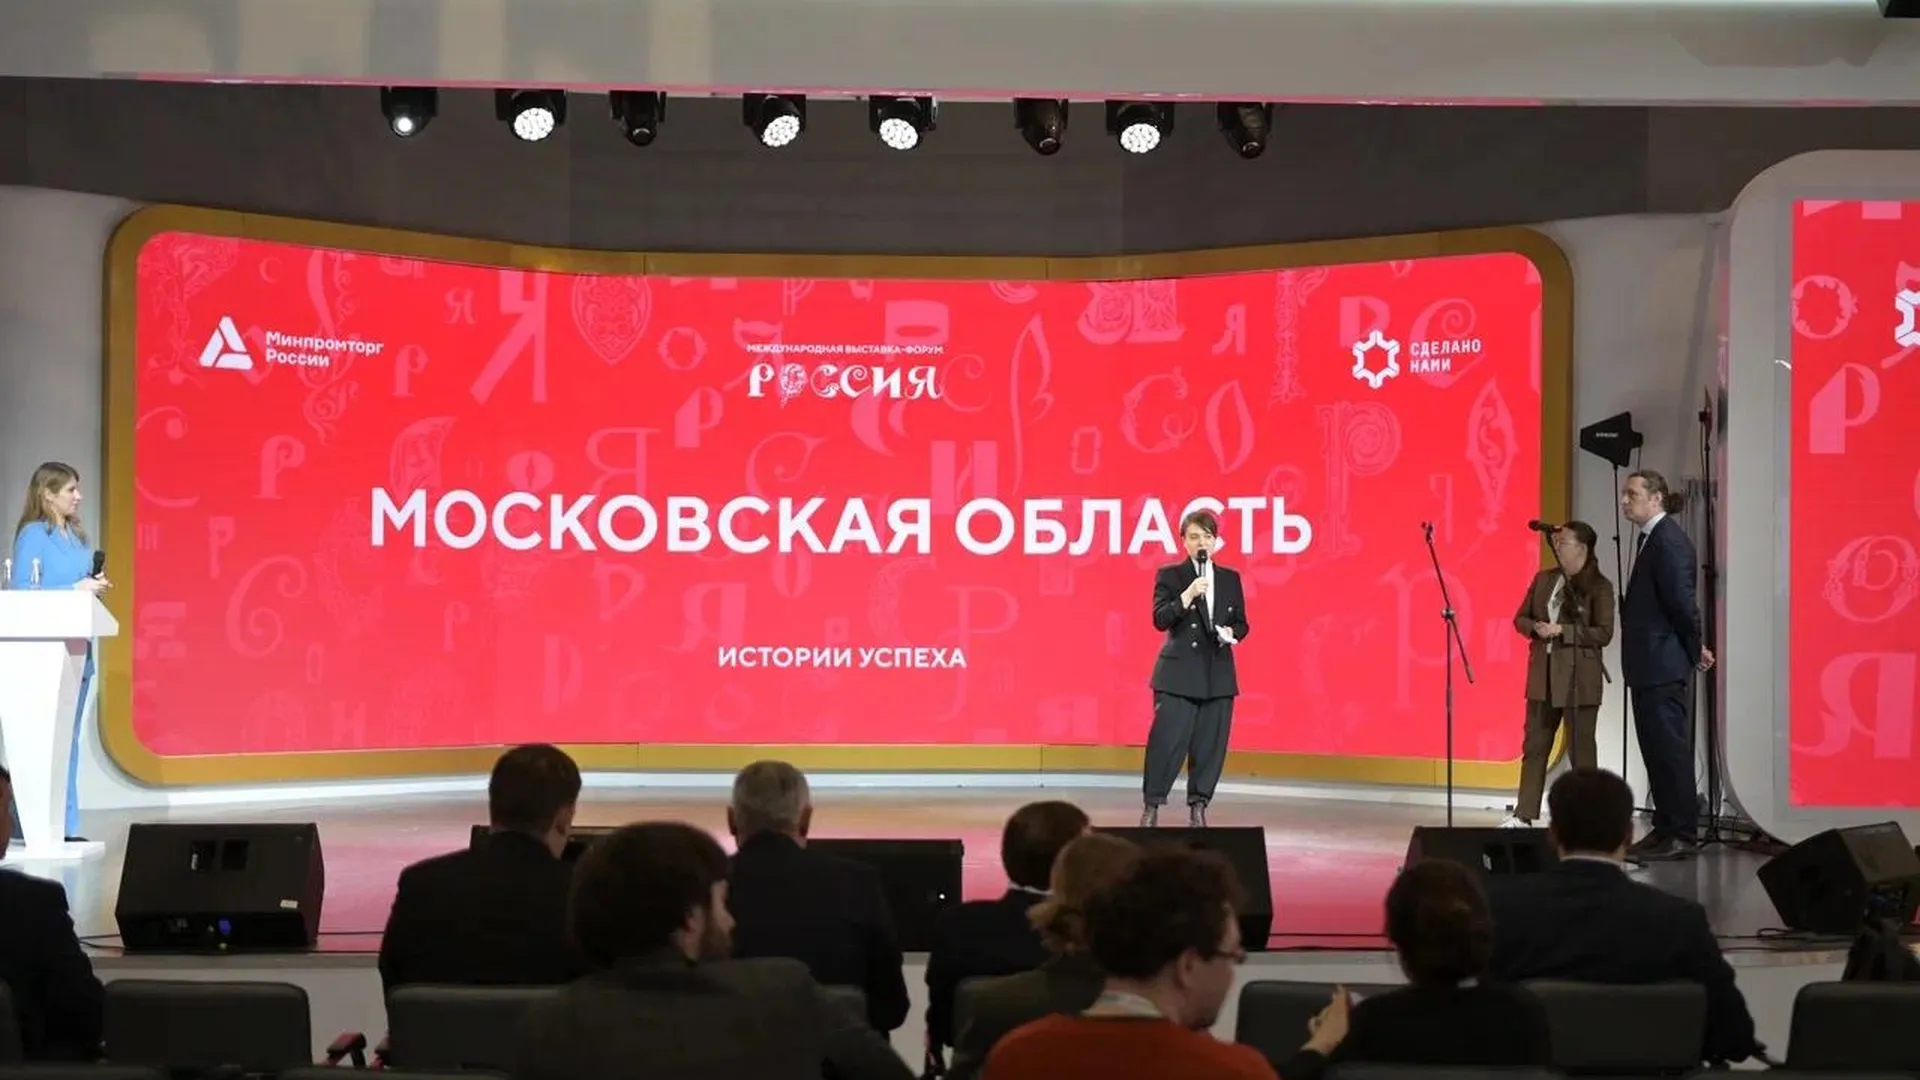 Подмосковье подготовило масштабную программу ко Дню предпринимательства на выставке «Россия»